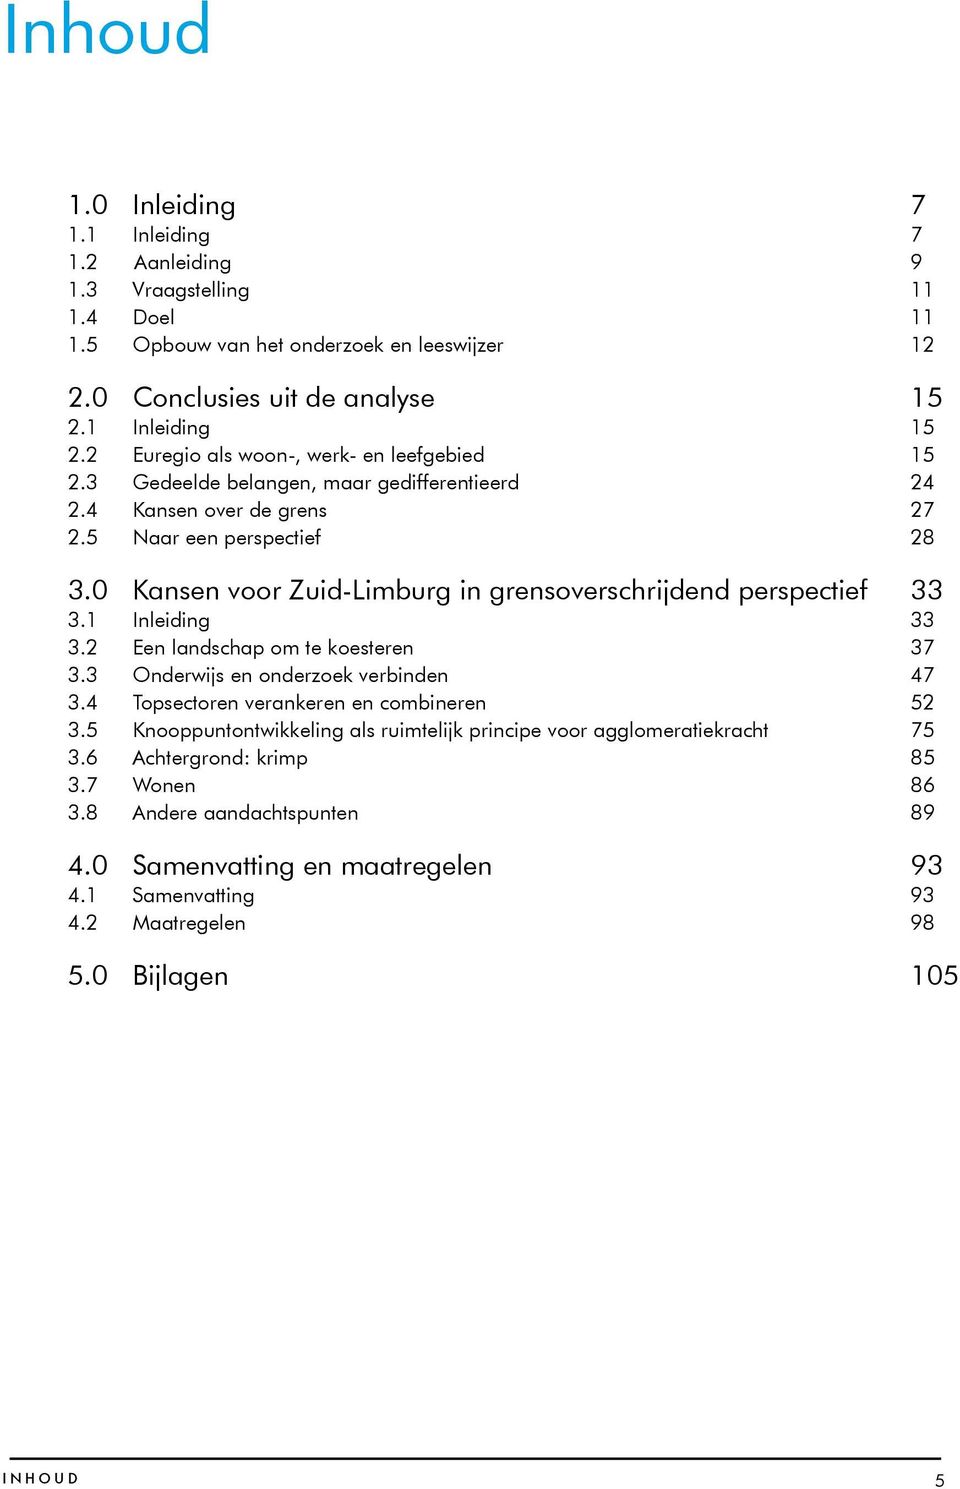 0 Kansen voor Zuid-Limburg in grensoverschrijdend perspectief 33 3.1 Inleiding 33 3.2 Een landschap om te koesteren 37 3.3 Onderwijs en onderzoek verbinden 47 3.